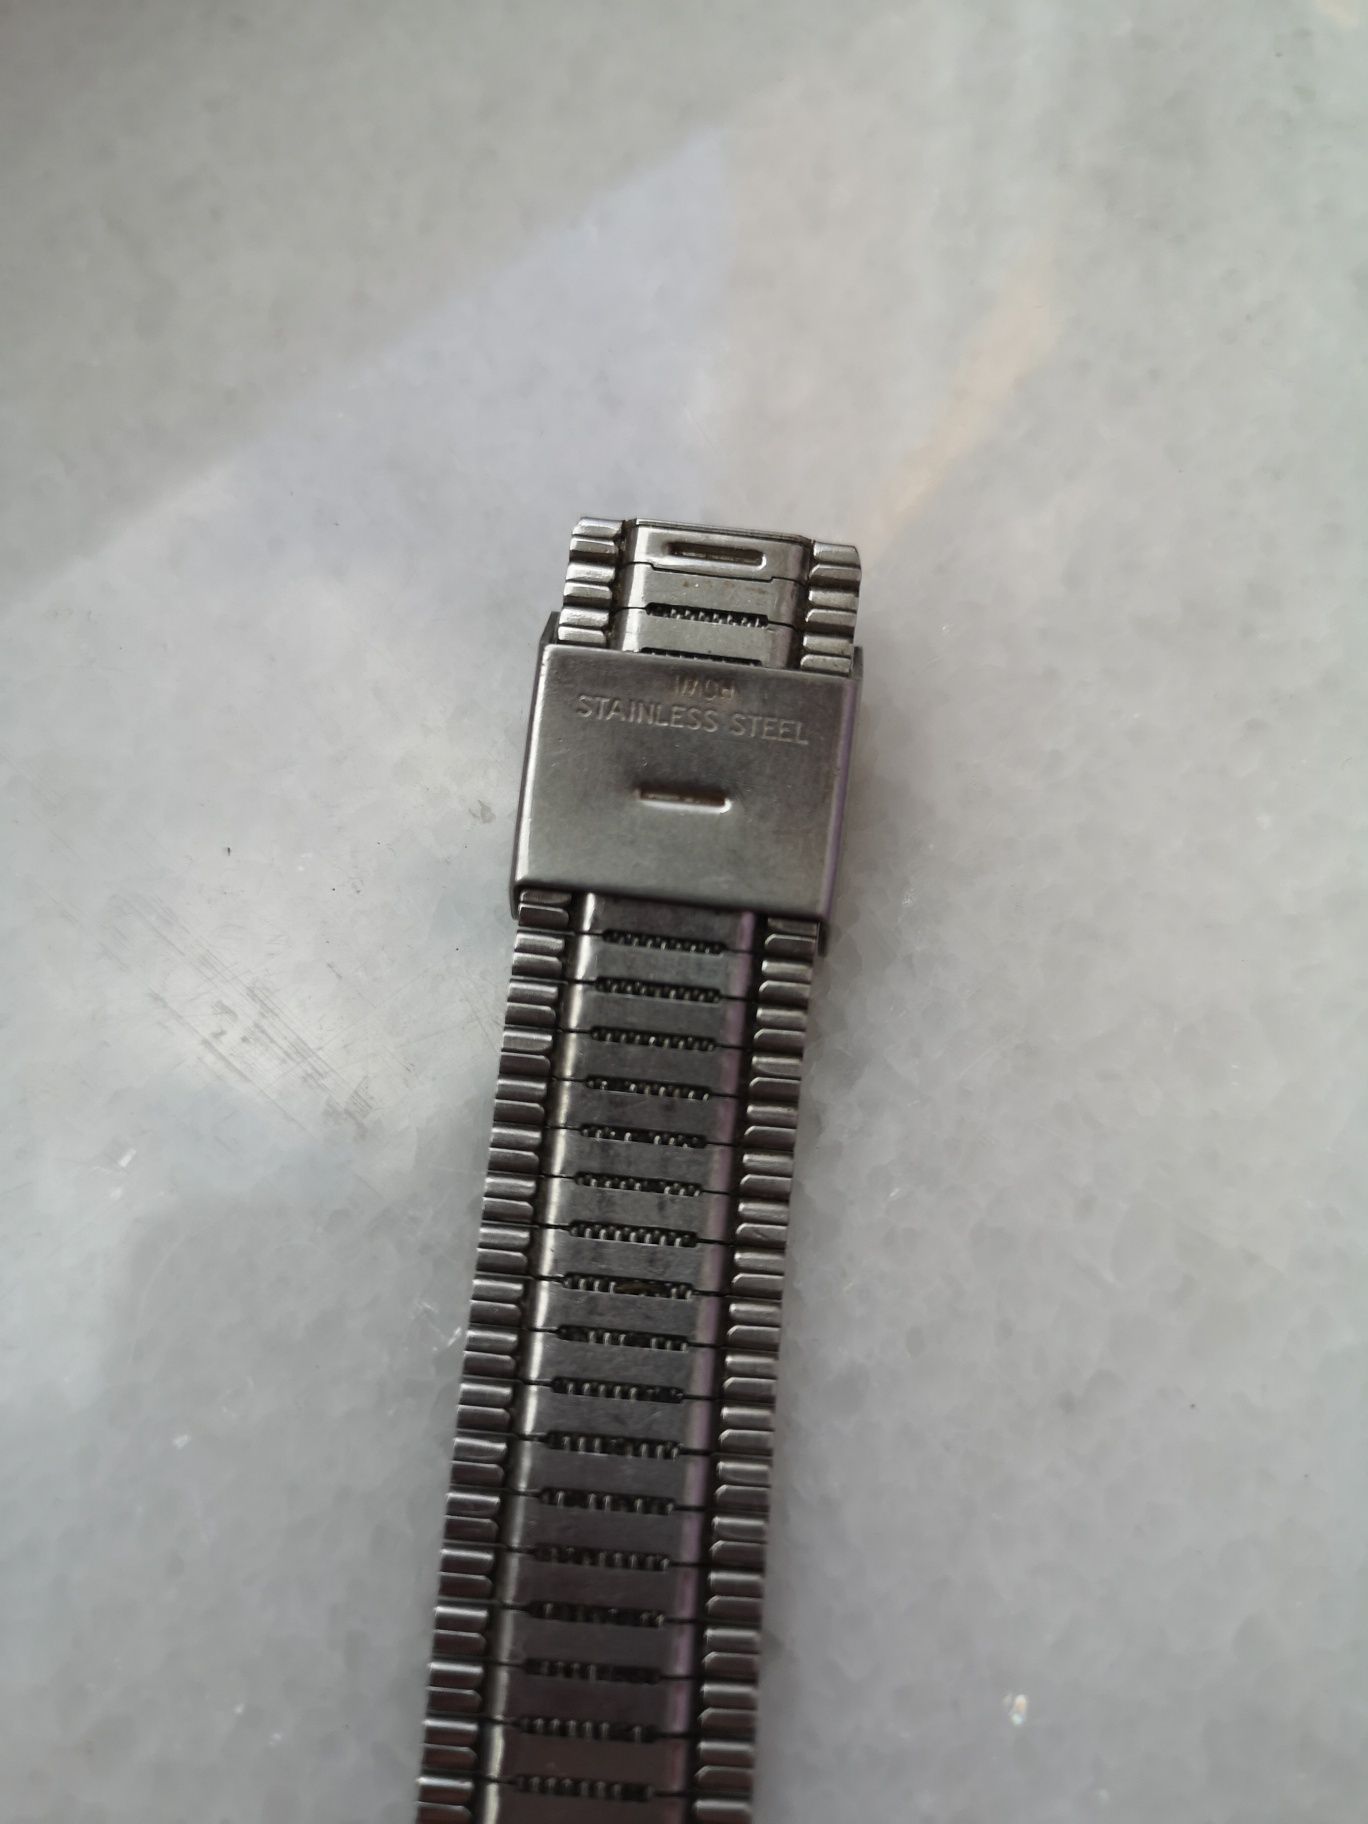 Часы Zentra 2000 Puw 560 17 jewels Германия